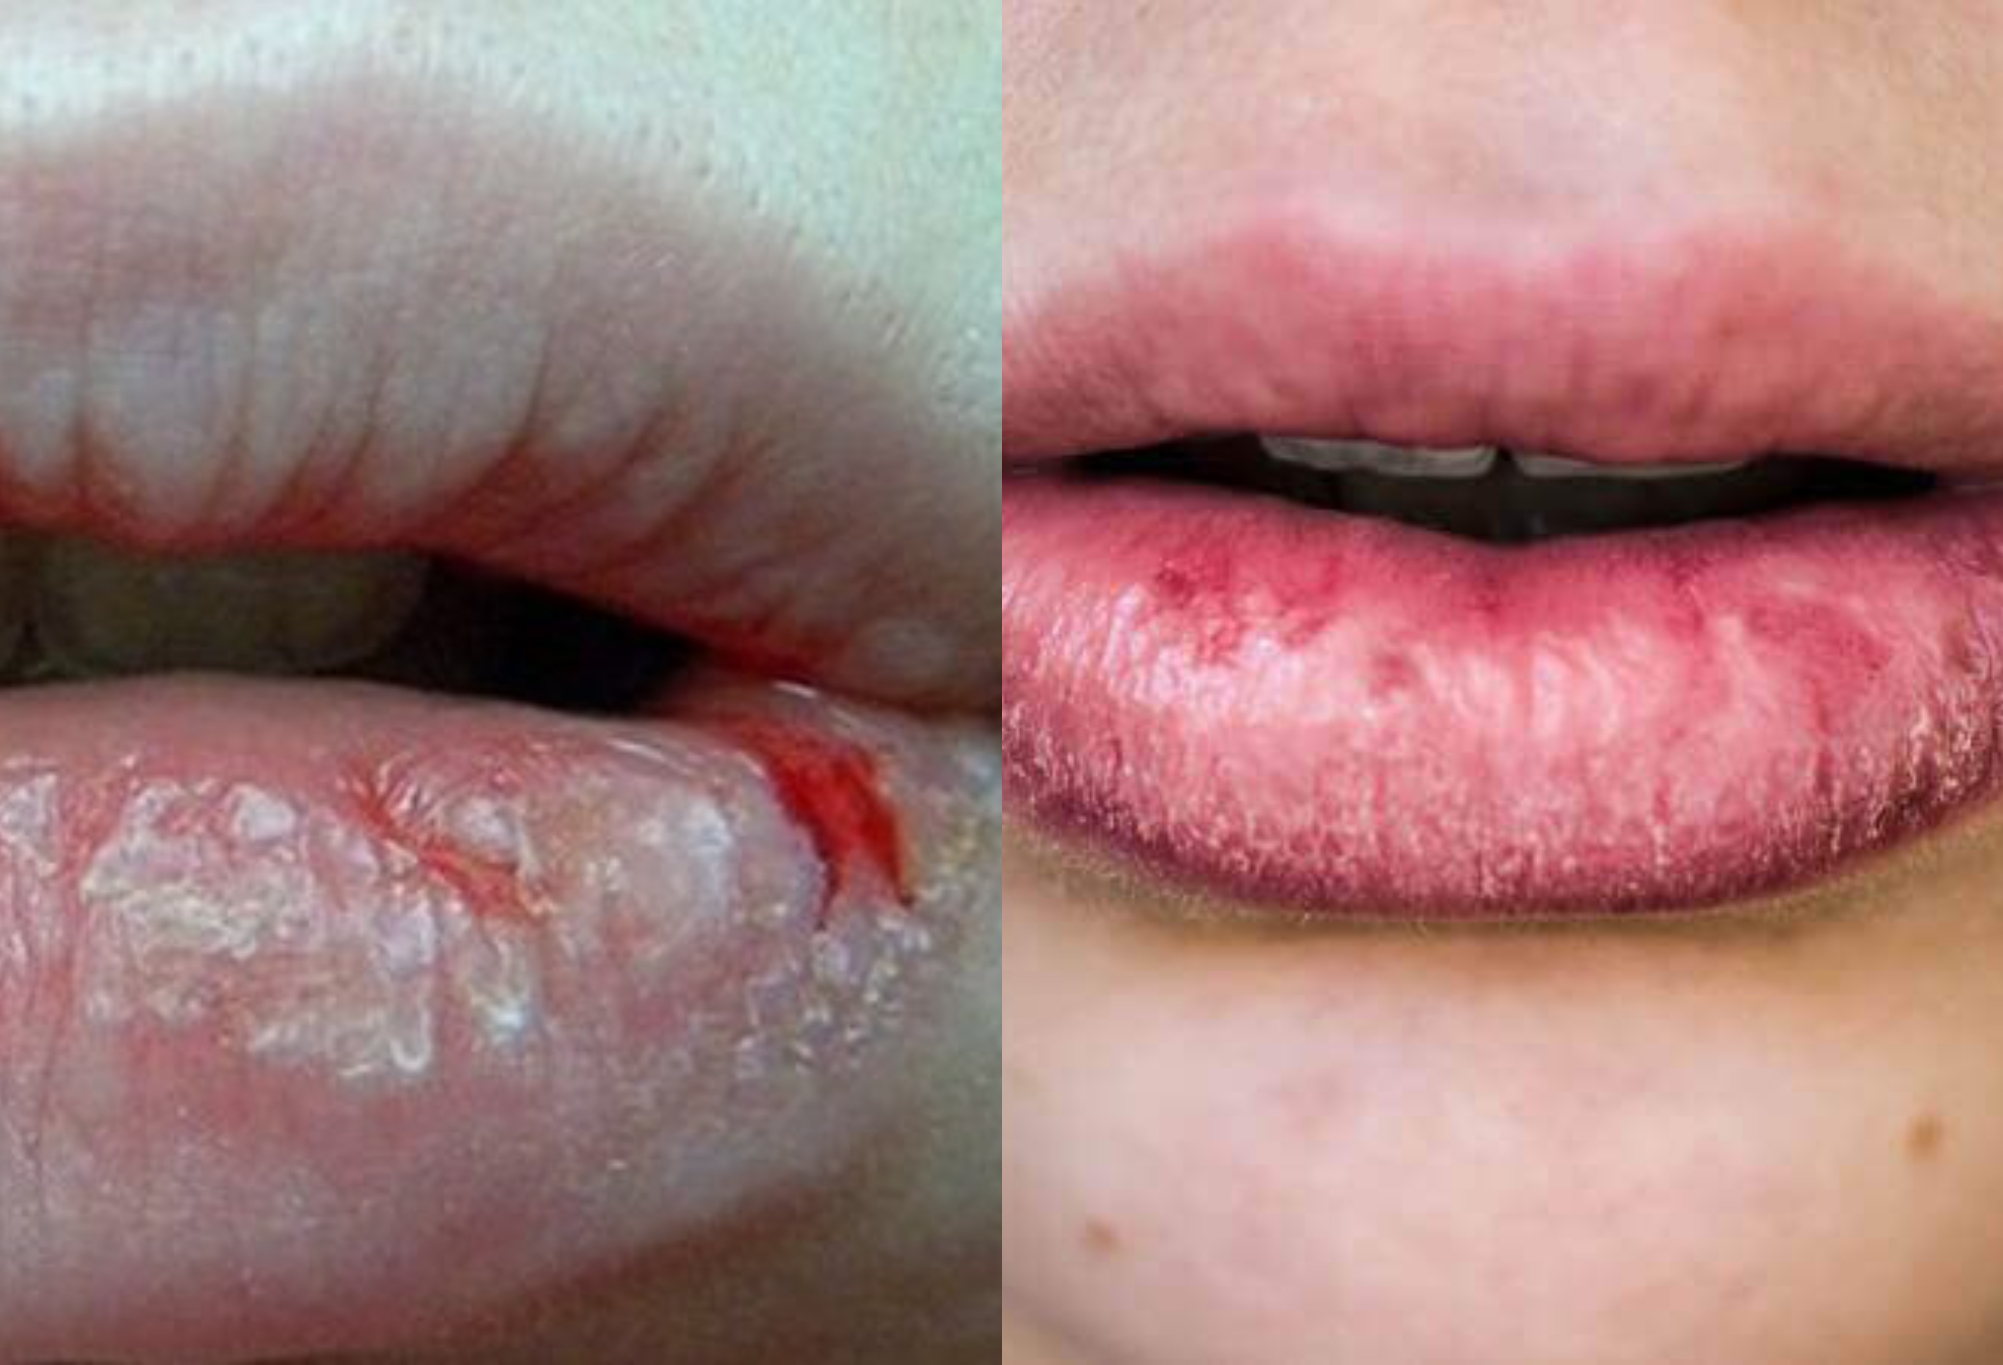 Σκασμένα χείλη τον χειμώνα : Αφυδατωμένα χείλη που ματώνουν – Οι ειδικοί συμβουλεύουν πως να τα φροντίσετε